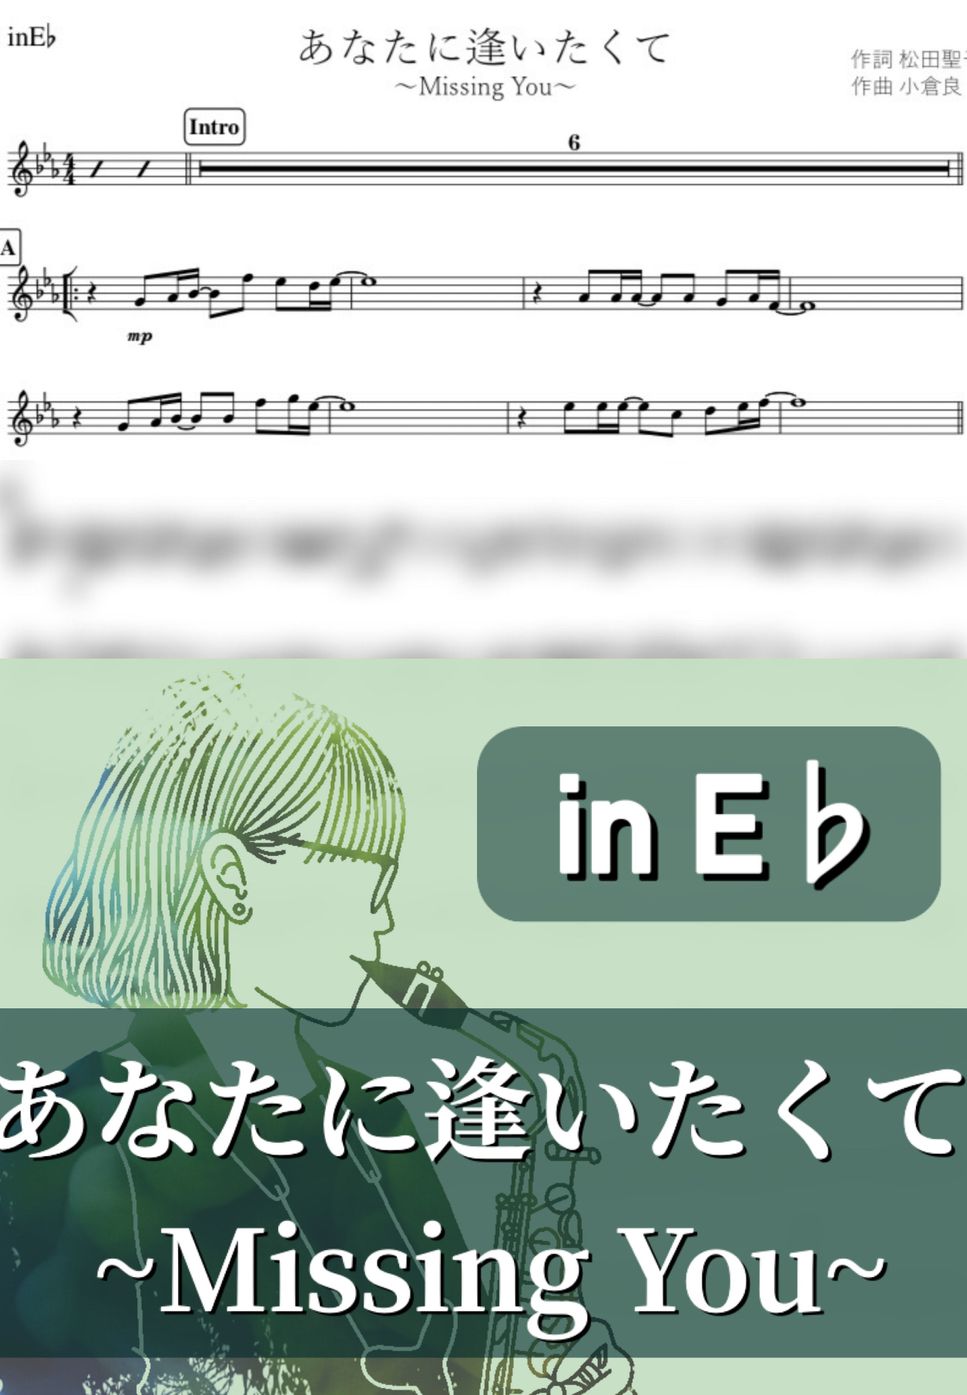 松田聖子 - あなたに逢いたくて (E♭) by kanamusic